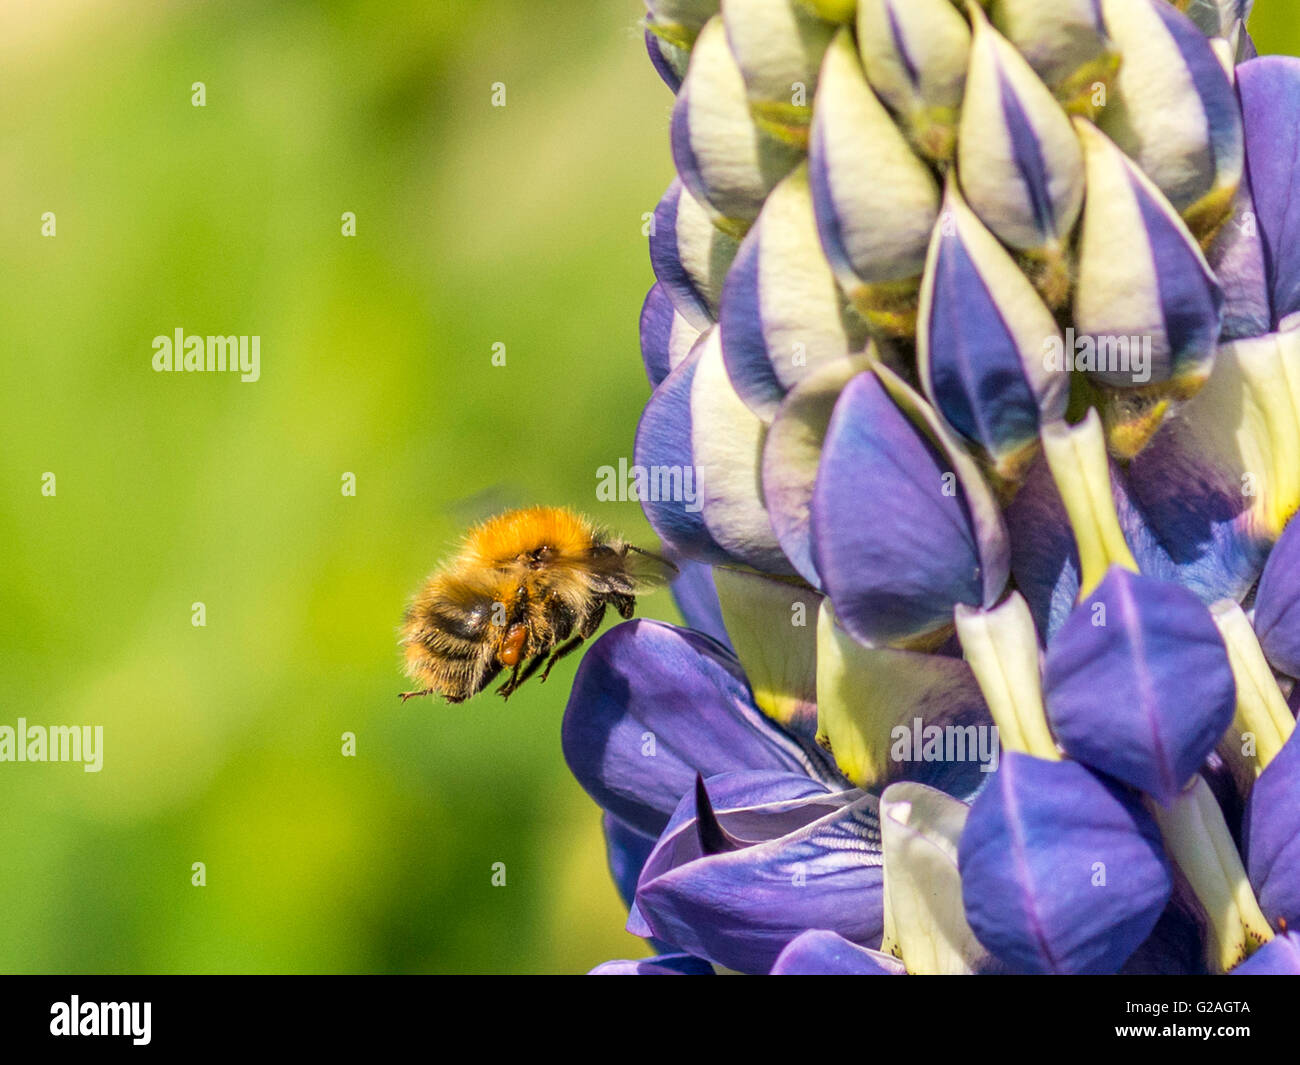 Polinizador de primavera, abejorro (Bombus) recogiendo el néctar de las vivid blue spike racimos como las yemas de la planta de altramuz jardín. Foto de stock